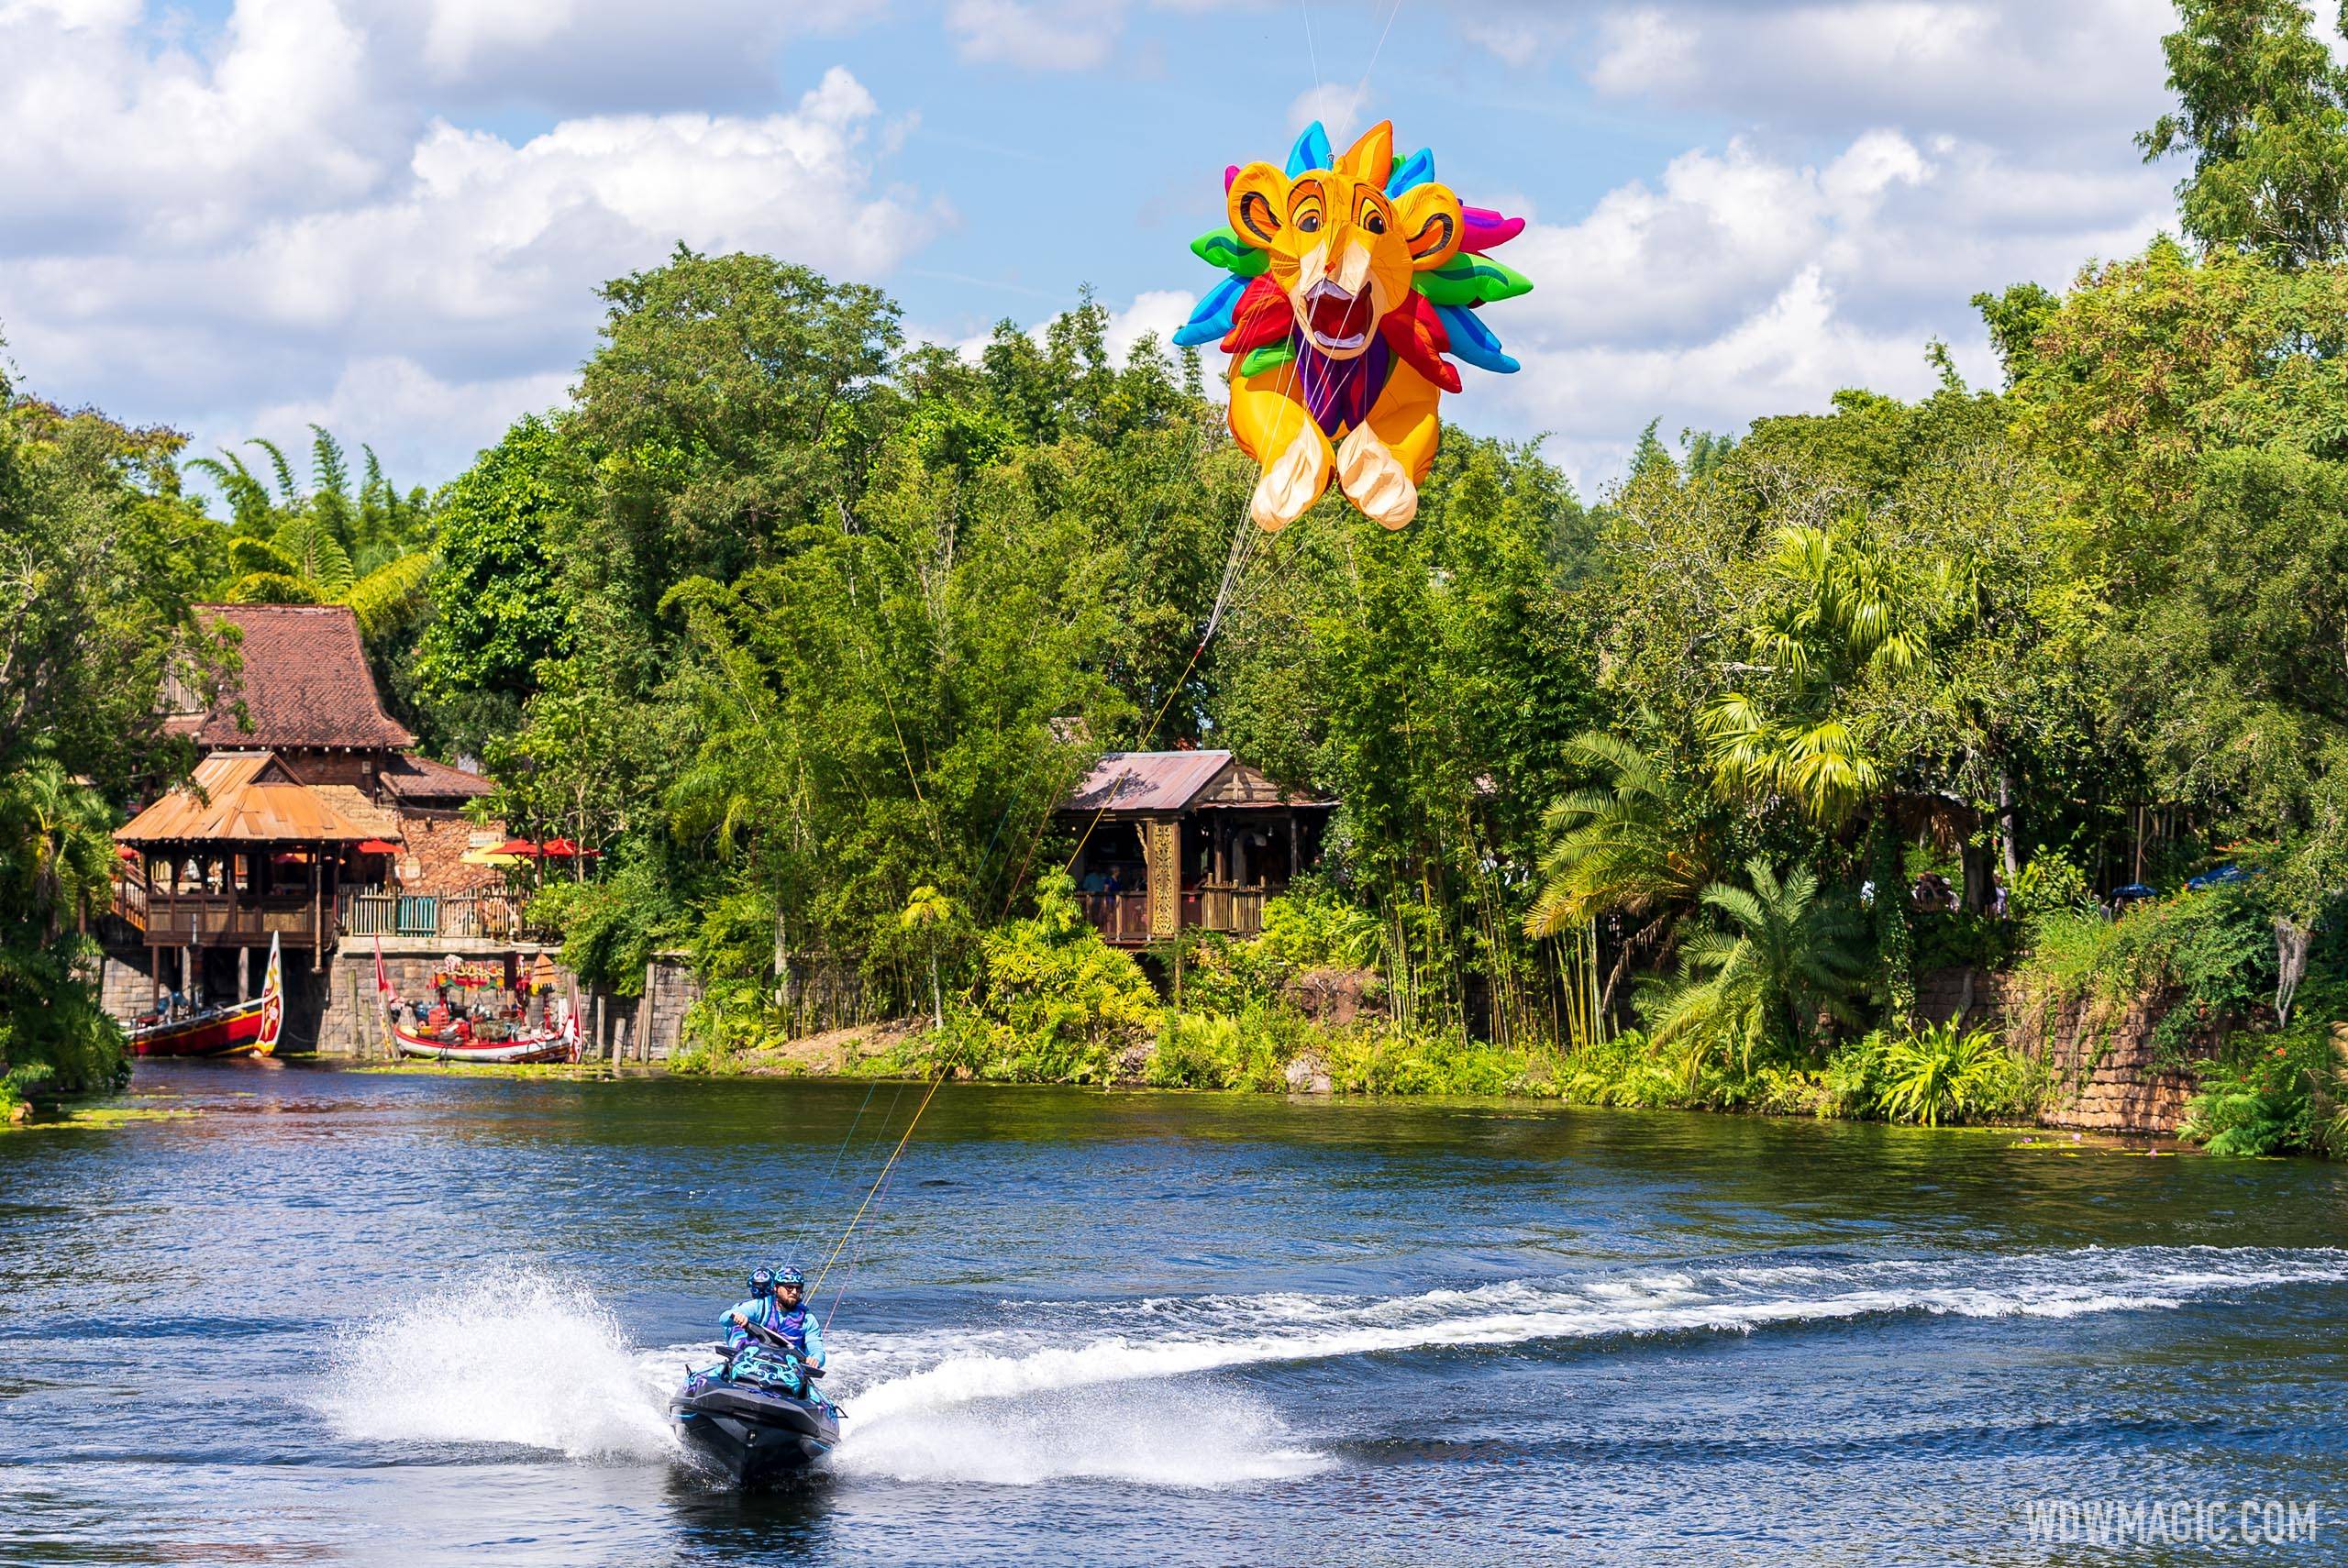 Disney KiteTails Lion King show